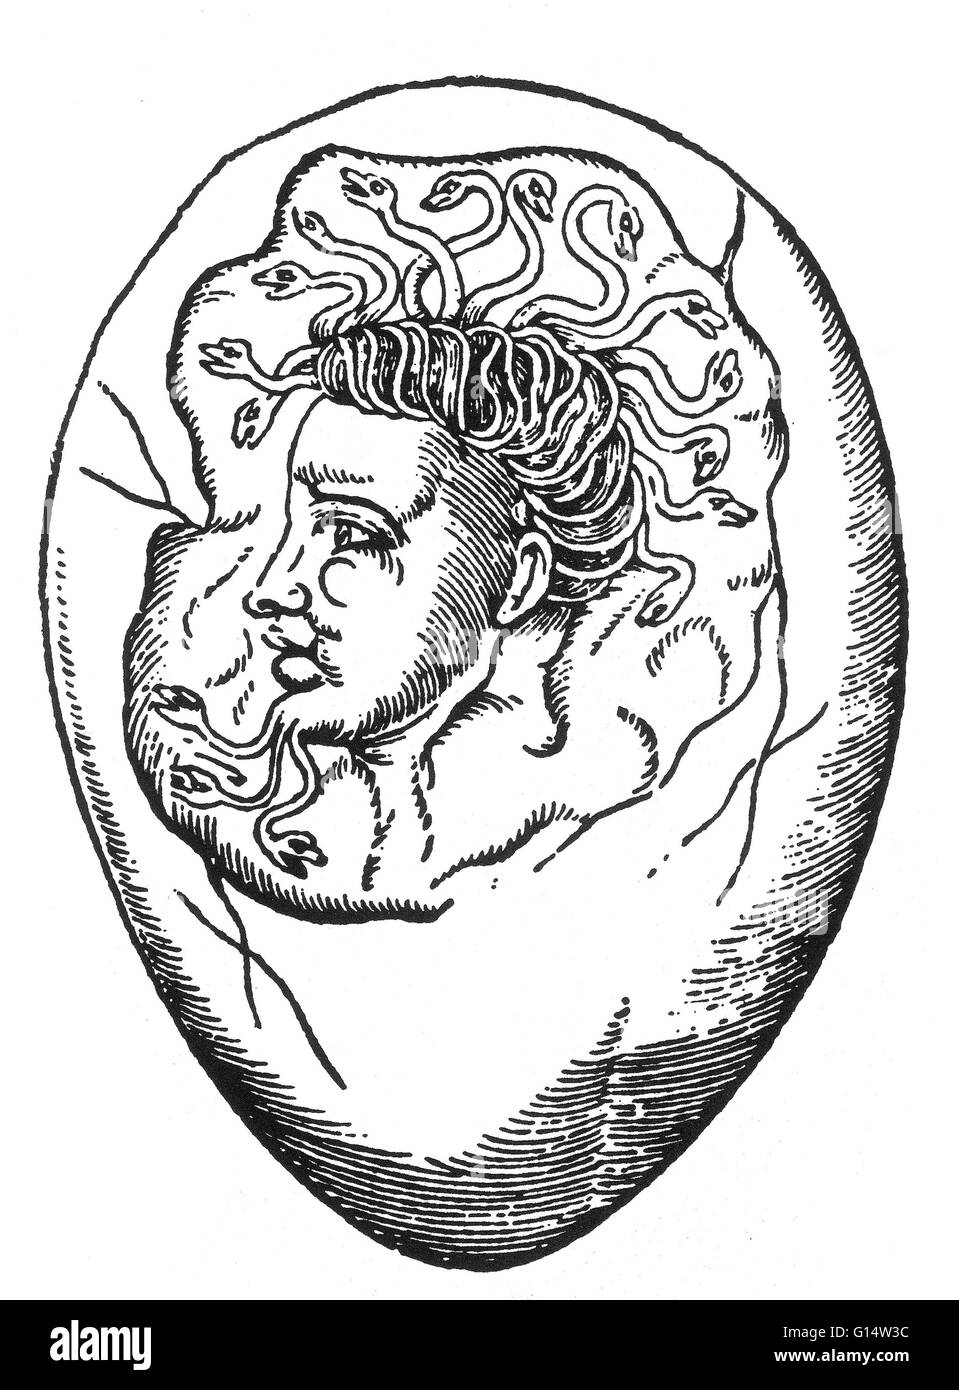 Xilografía de 'la forma de un monstruo encontrado en un huevo" de Des Monstres et prodiges por Ambroise Paré, 1573. Des Monstres está lleno de cuentas sin fundamento de los diablos de mar, marinos hembras y animales monstruosos con rostros humanos. Con su extensa discussio Foto de stock